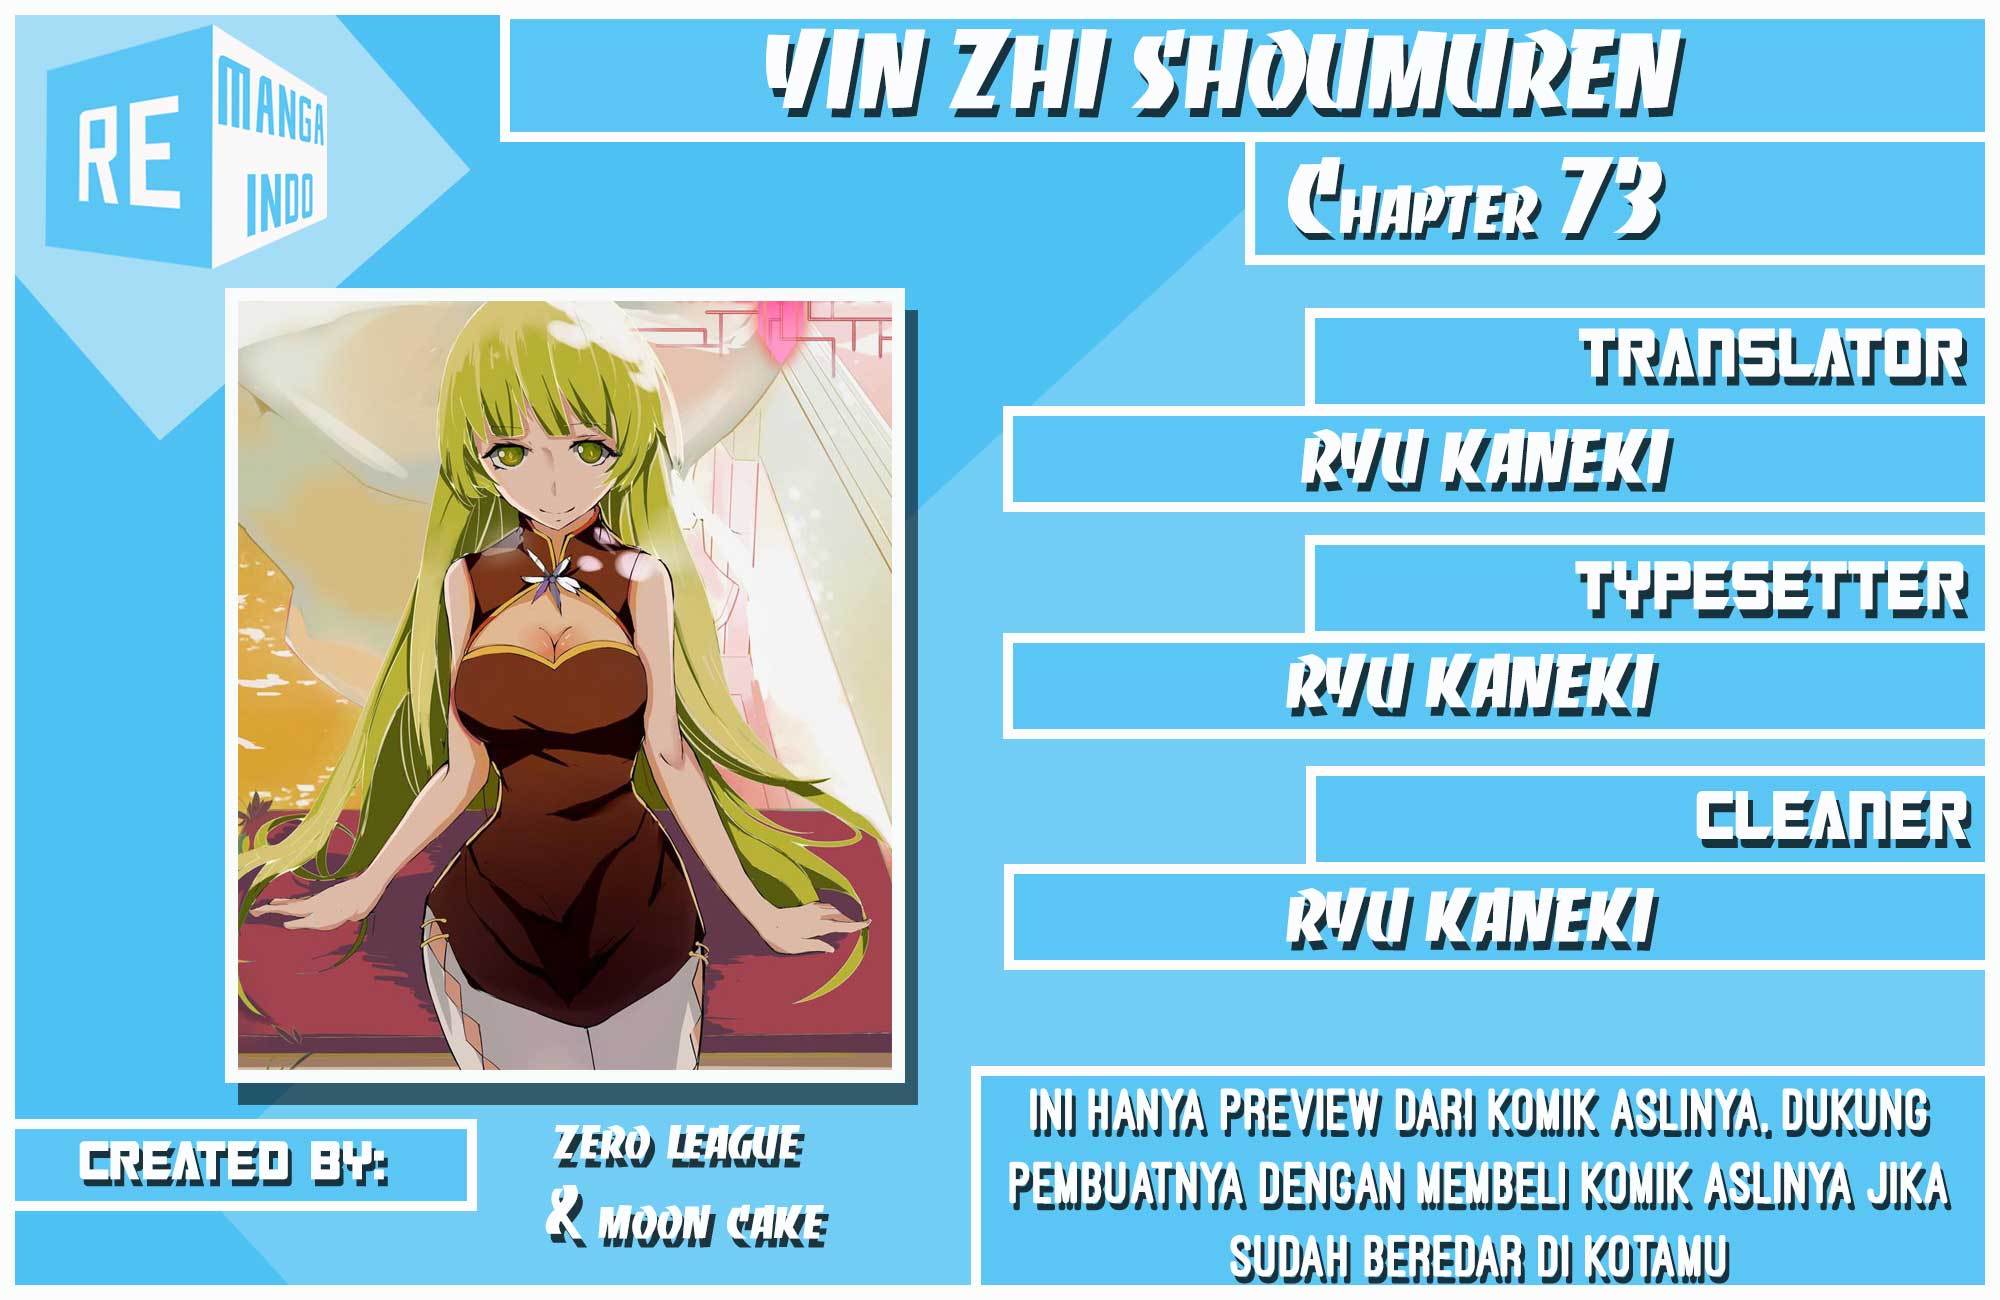 Yin Zhi Shoumuren Chapter 73